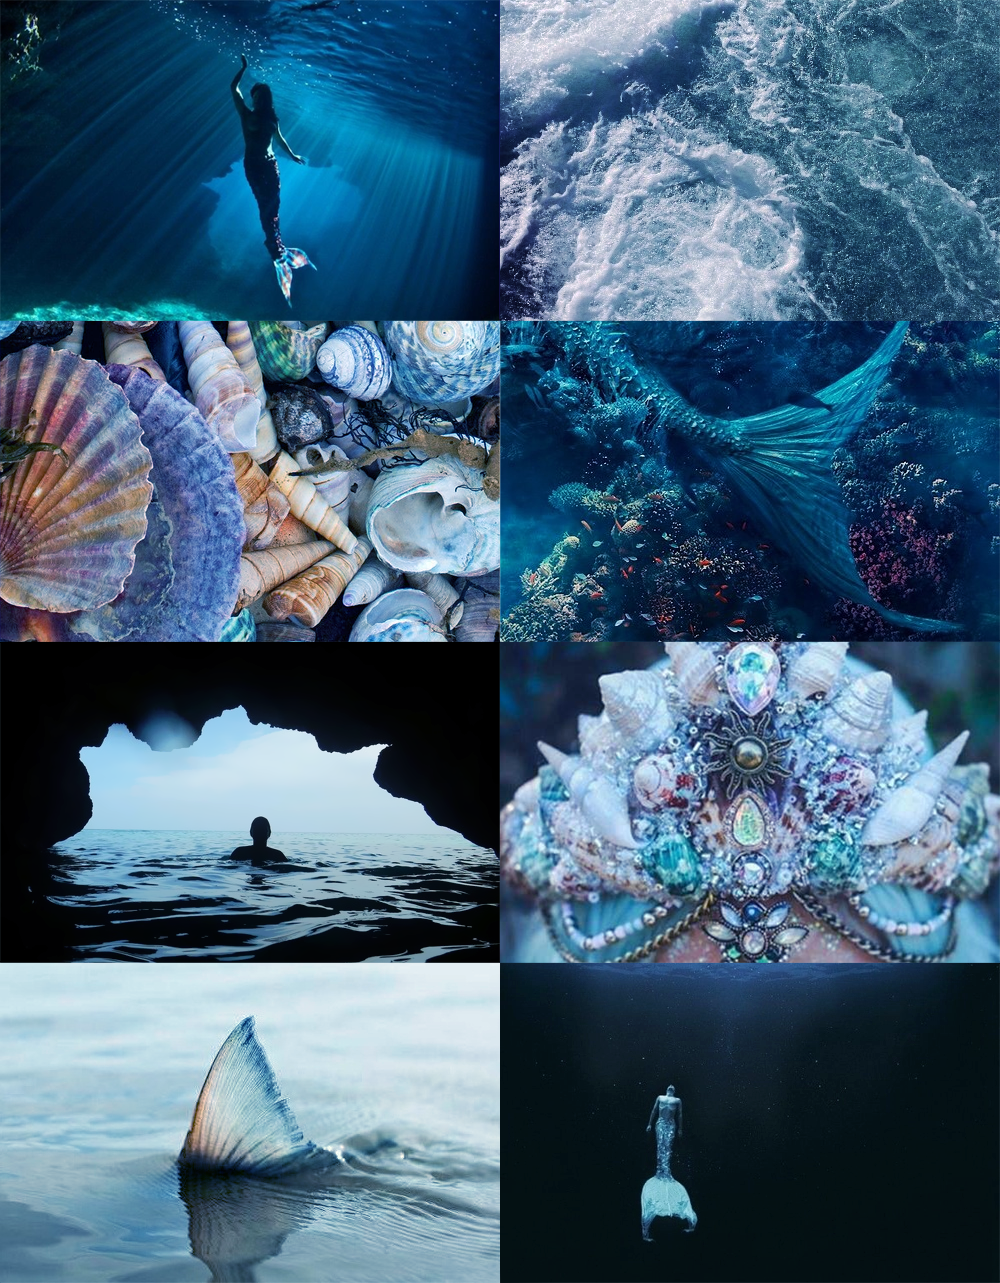 Mermaid Aesthetic. Mermaid aesthetic, Magic aesthetic, Mermaids and mermen